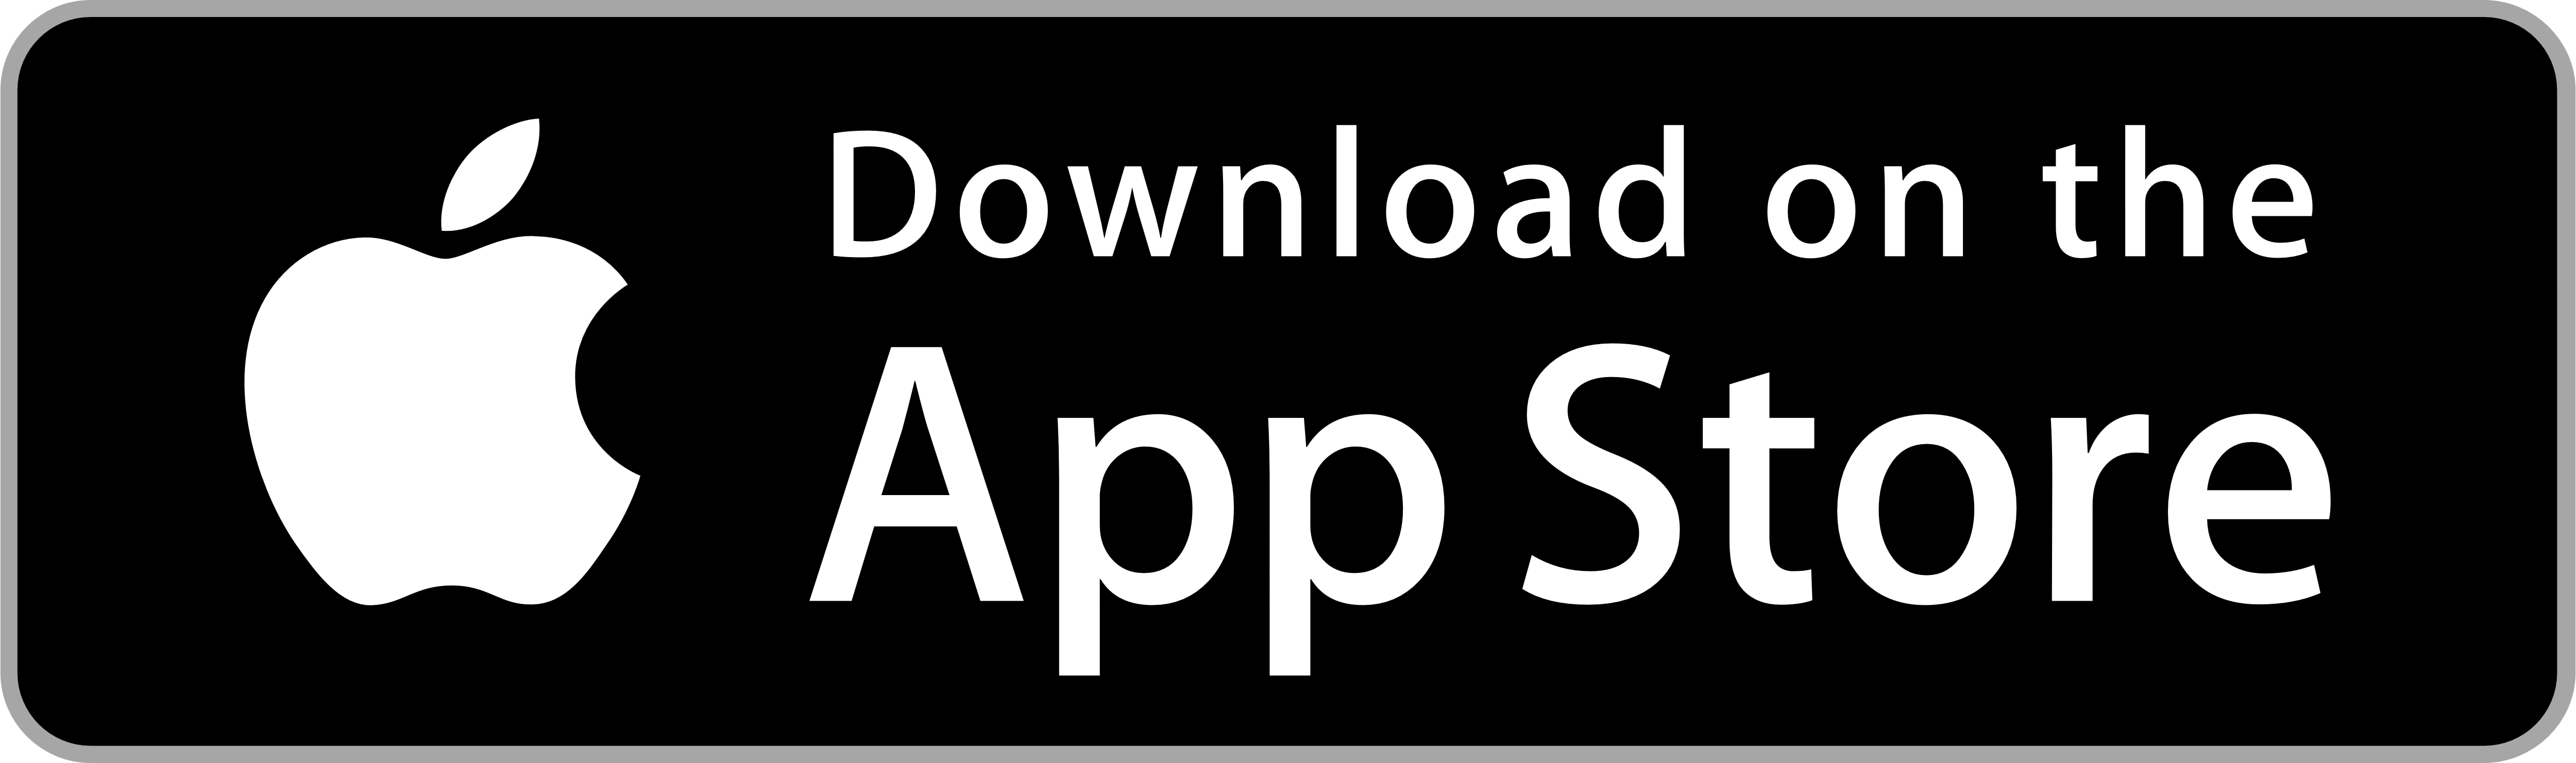 App Store – Logos Download